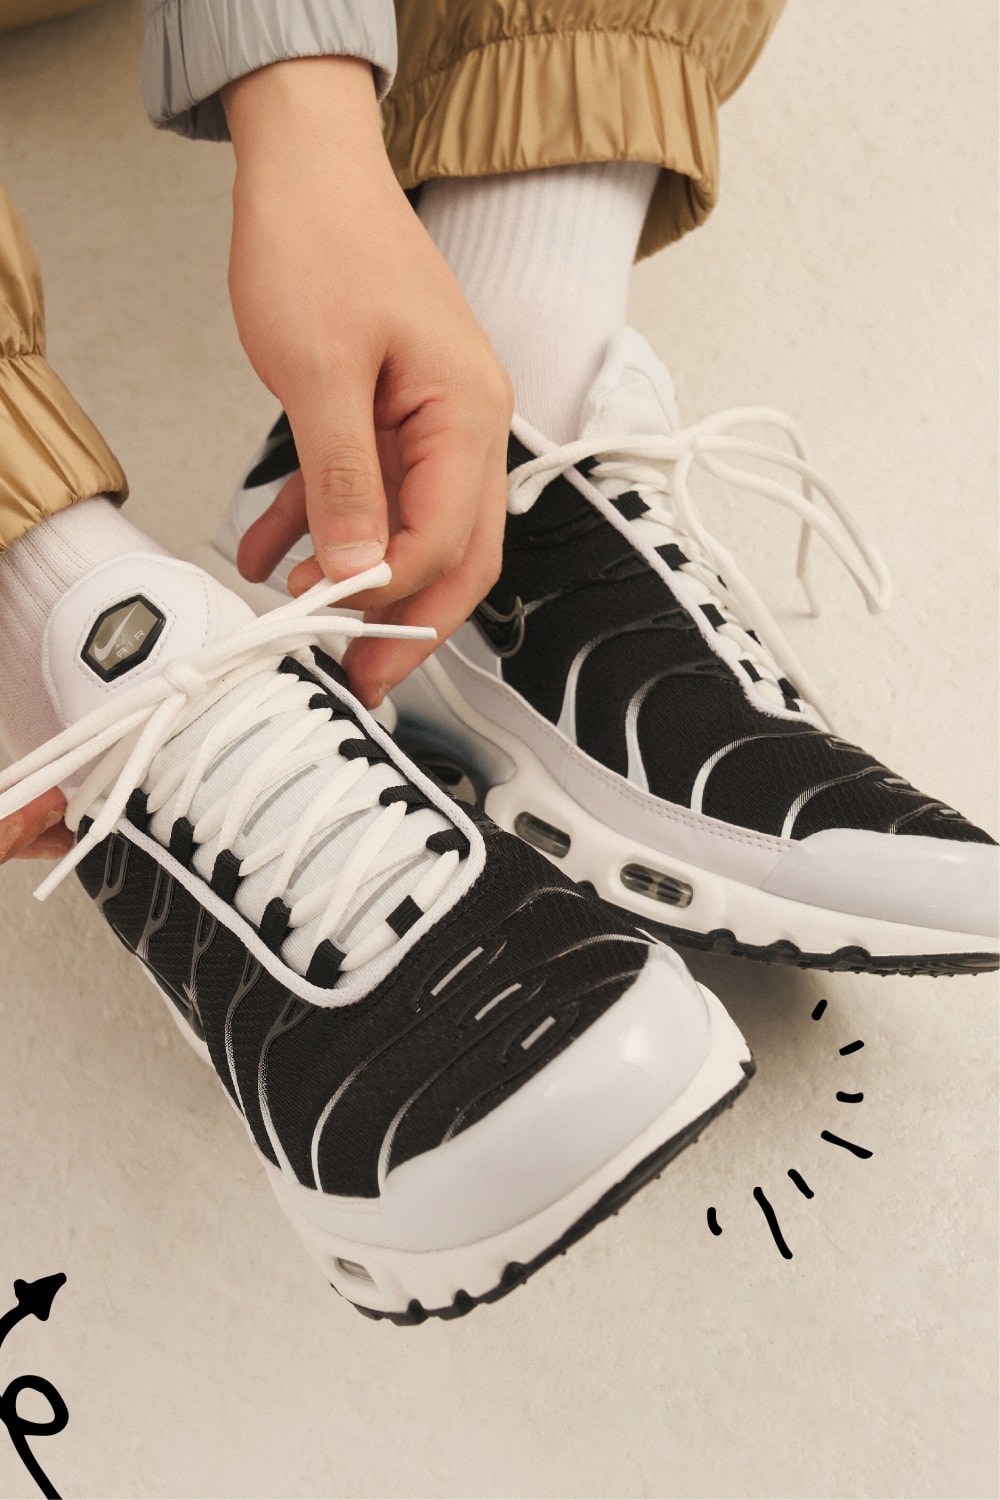 풋락커, ‘The Heart of Sneakers’ 캠페인 공개 foot locker sneaker campaign